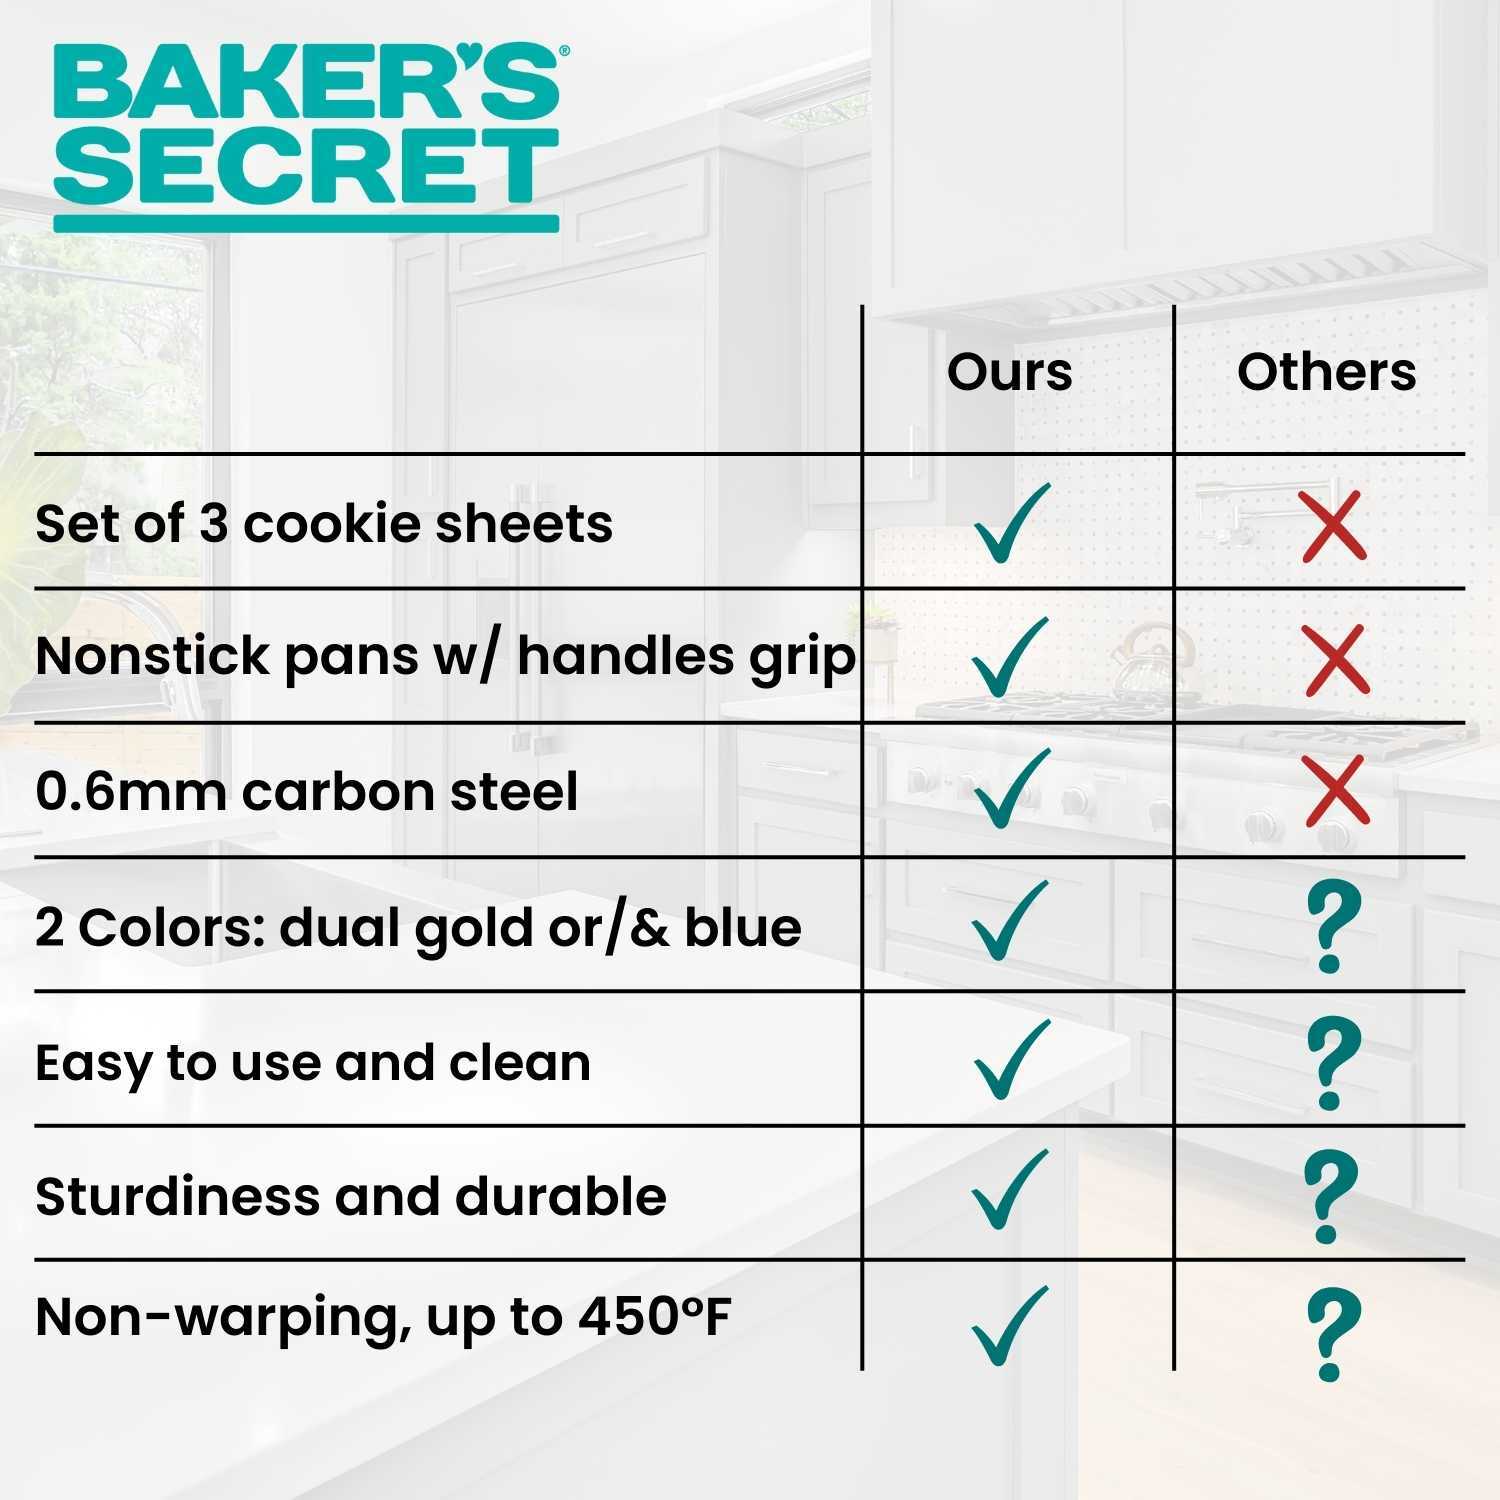 Baker's Secret Baking sheets for Oven - Bakeware Set of 3 Cookie